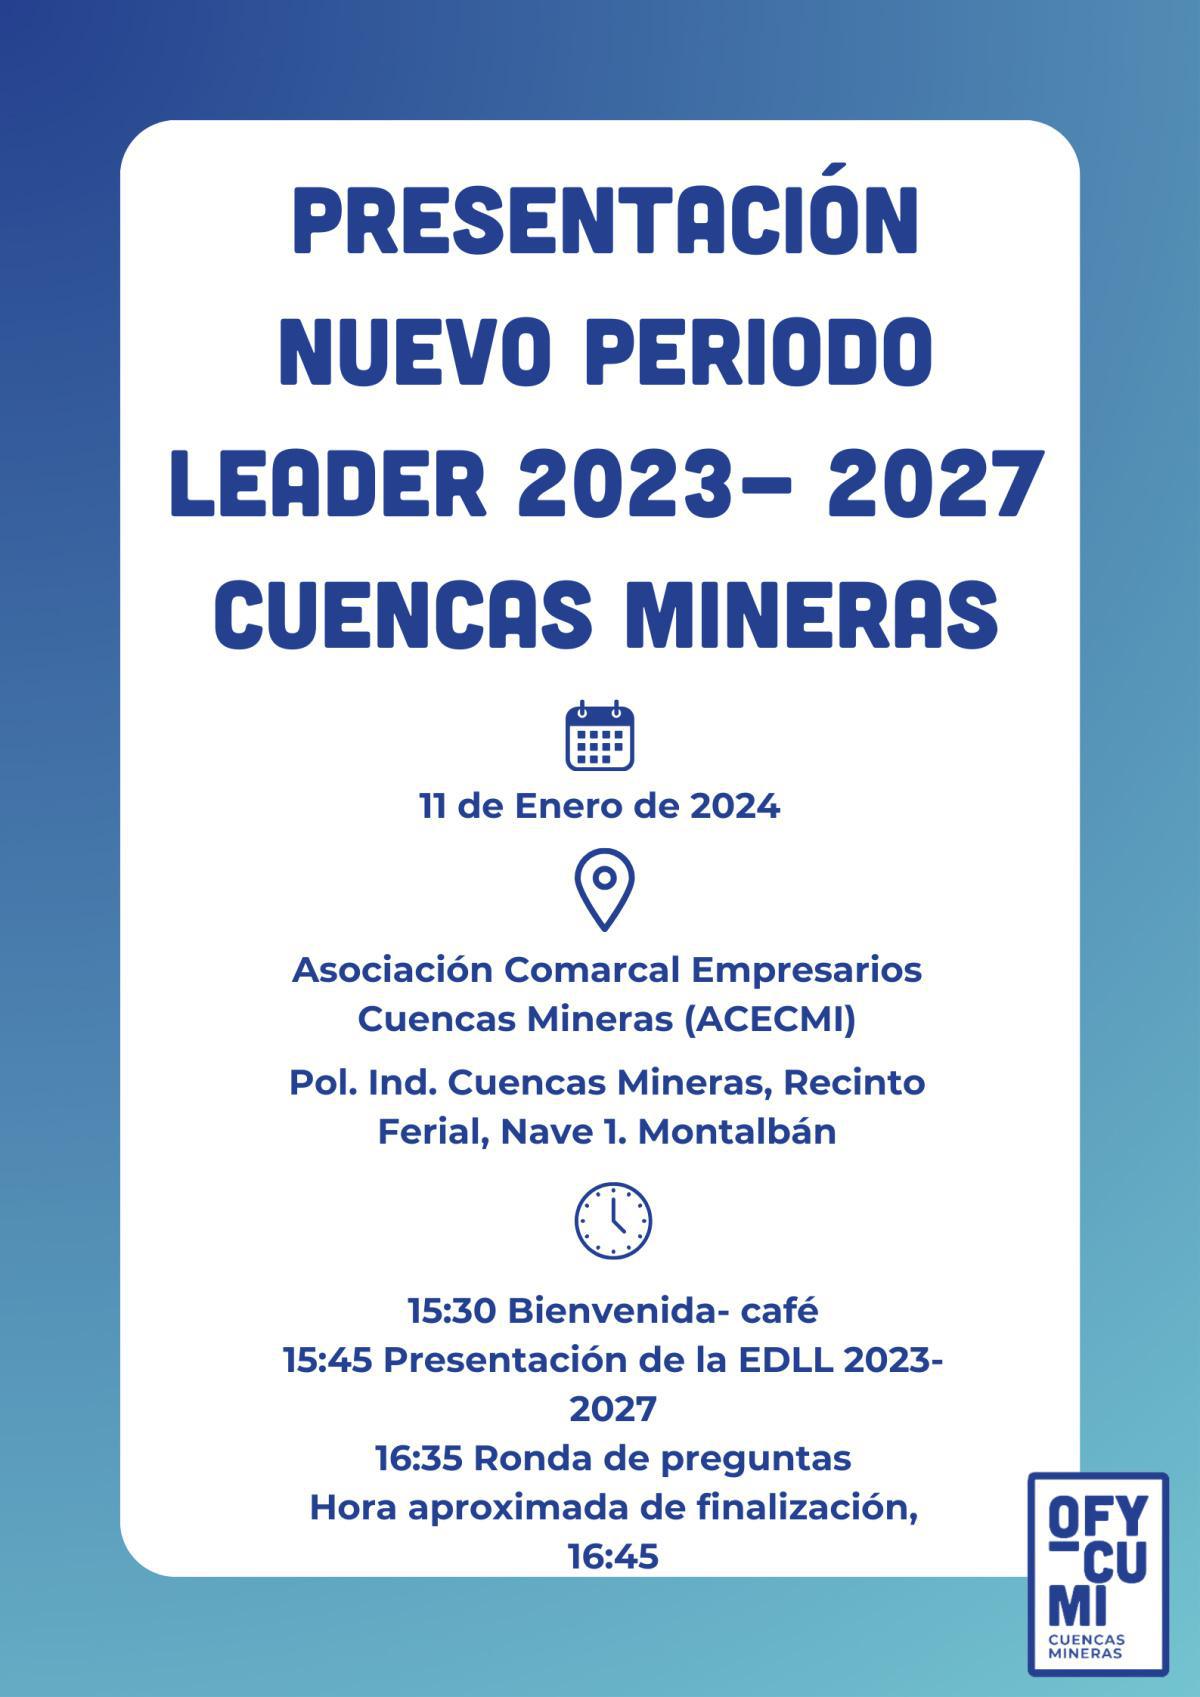 OFYCUMI Y EL PLAN LEADER 2023-27